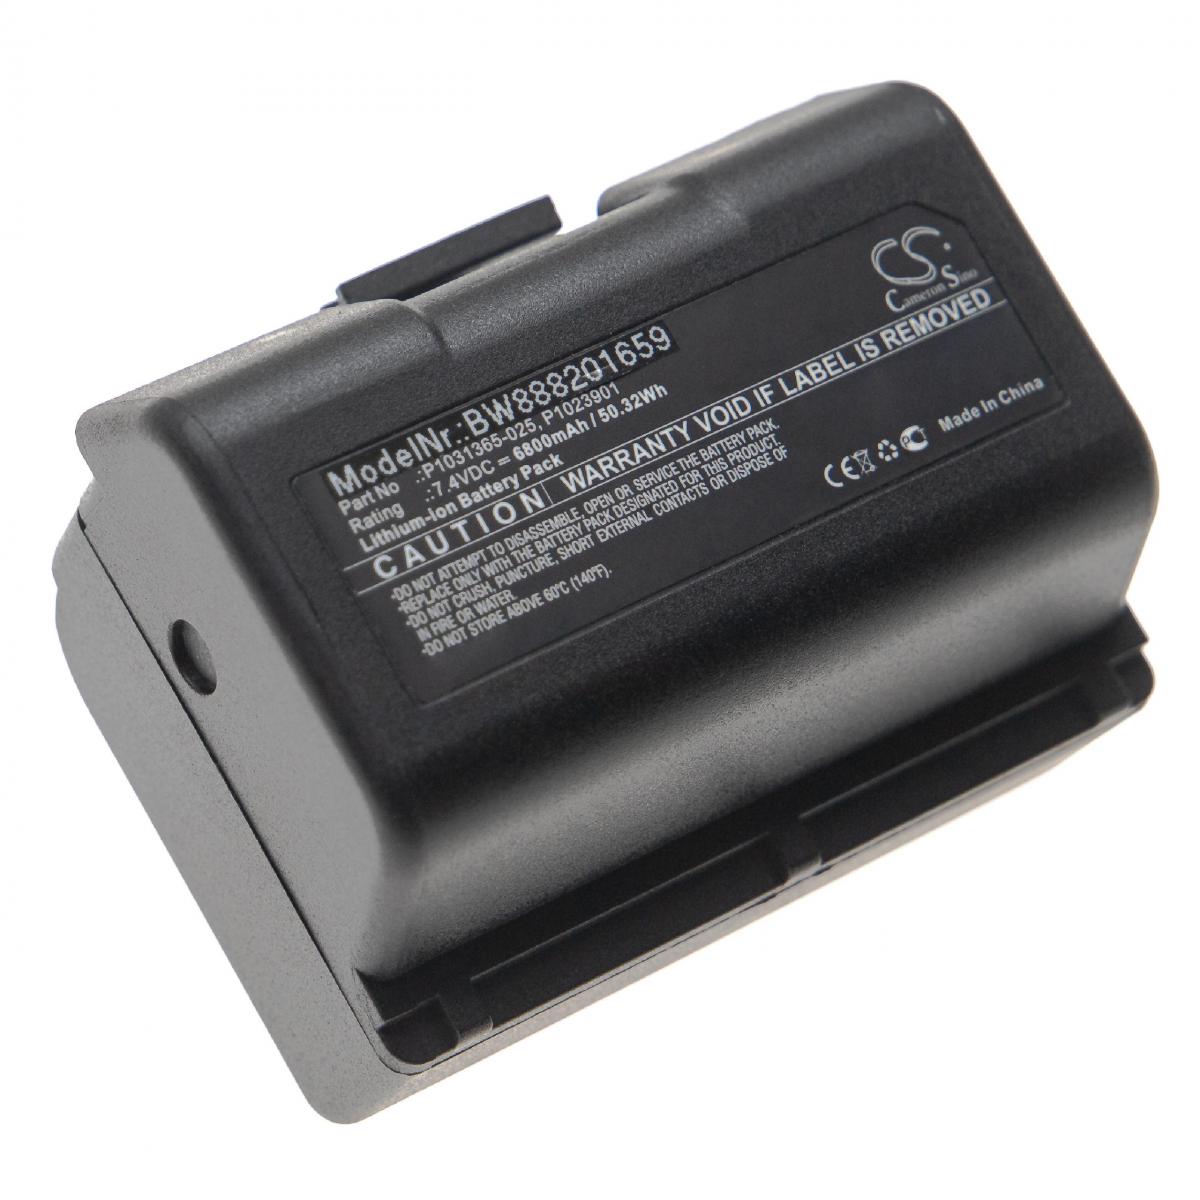 Vhbw - vhbw batterie remplace Zebra P1031365-069, P1051378 pour imprimante photocopieur scanner imprimante à étiquette (6800mAh, 7,4V, Li-Ion) - Imprimante Jet d'encre